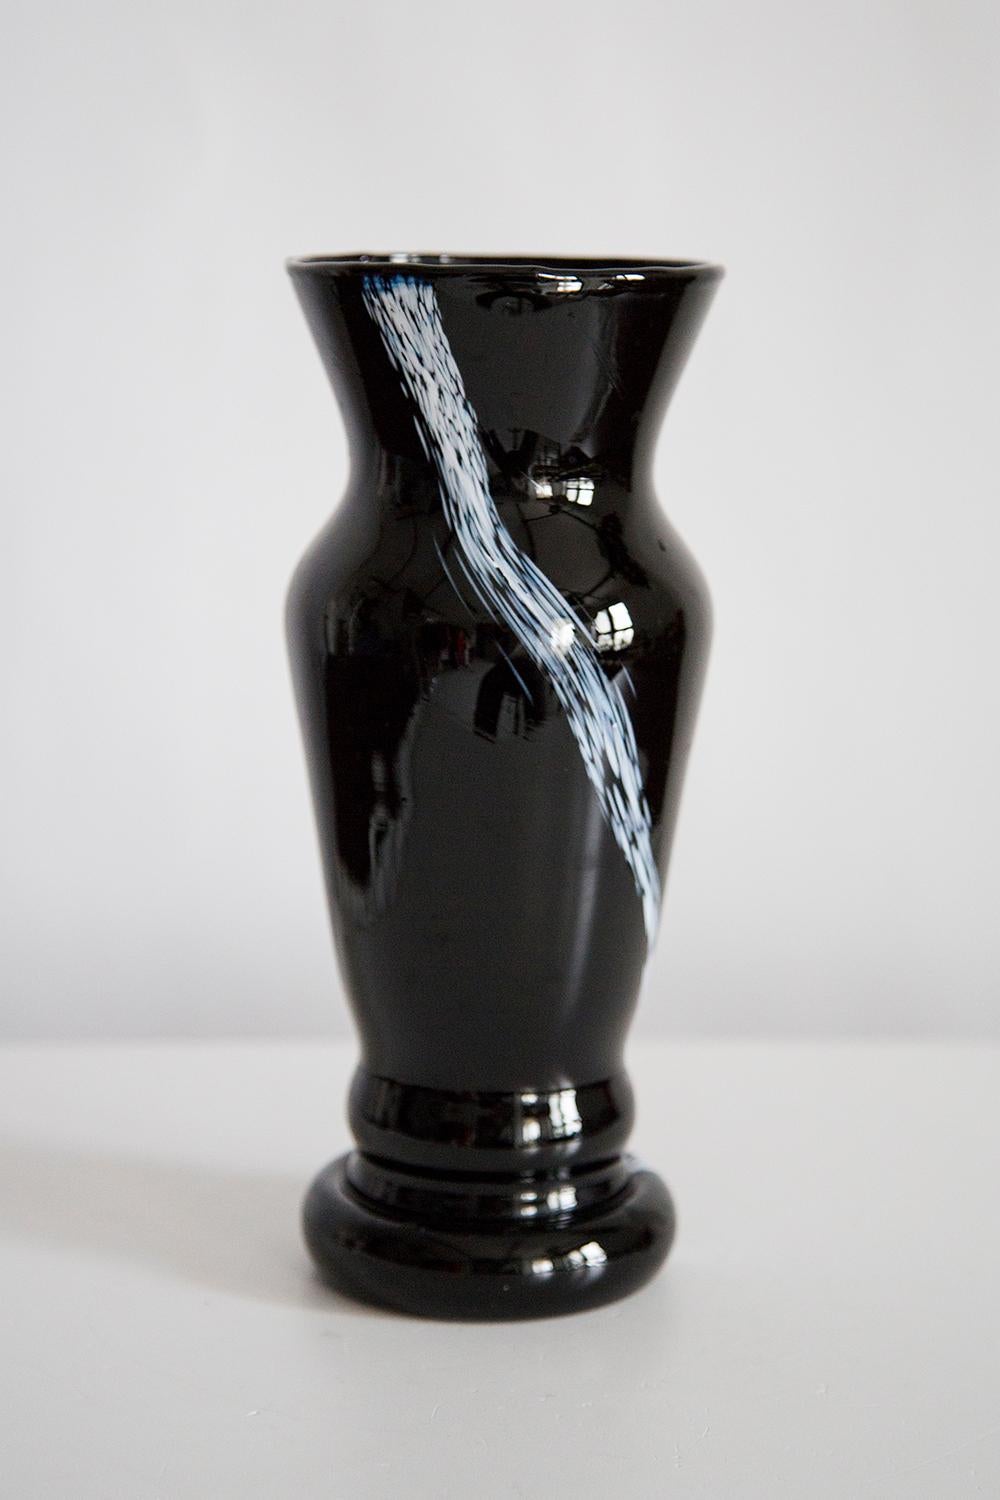 Schwarz-weiße Vase in erstaunlich organischer Form. 
Produziert in den 1960er Jahren. Glas in perfektem Zustand. 
Die Vase sieht aus, als wäre sie gerade erst aus der Schachtel genommen worden.

Keine Zacken, Defekte, etc.etc. Die äußere Oberfläche